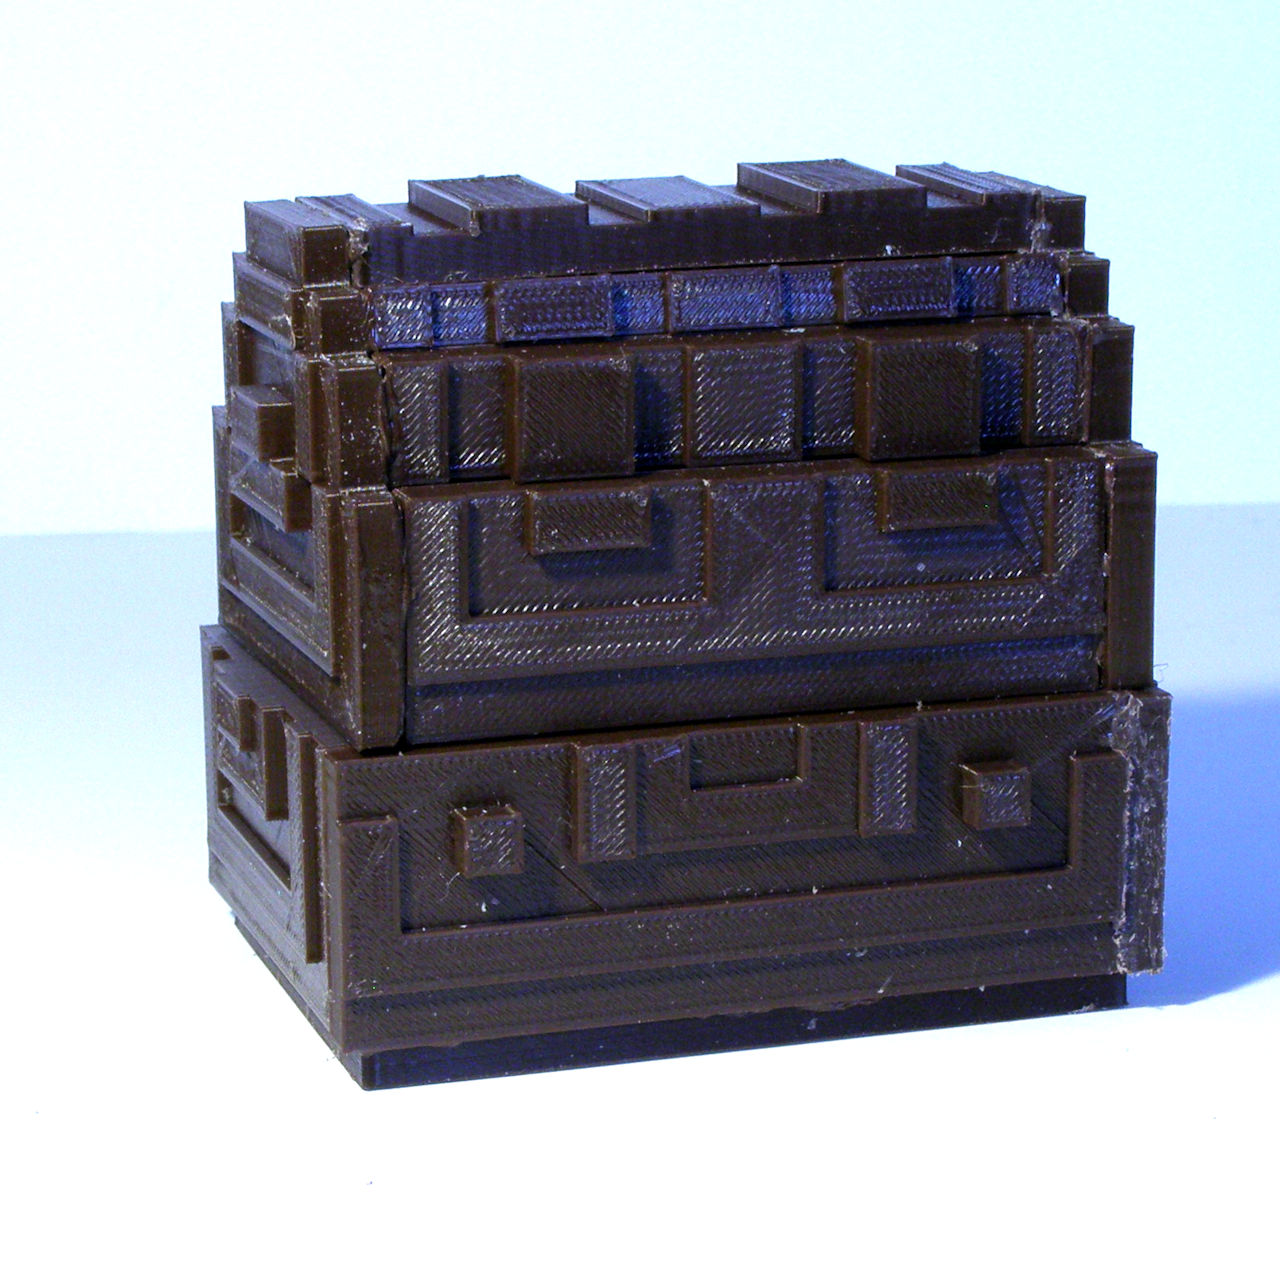 Zelda 8 bit treasure chest image